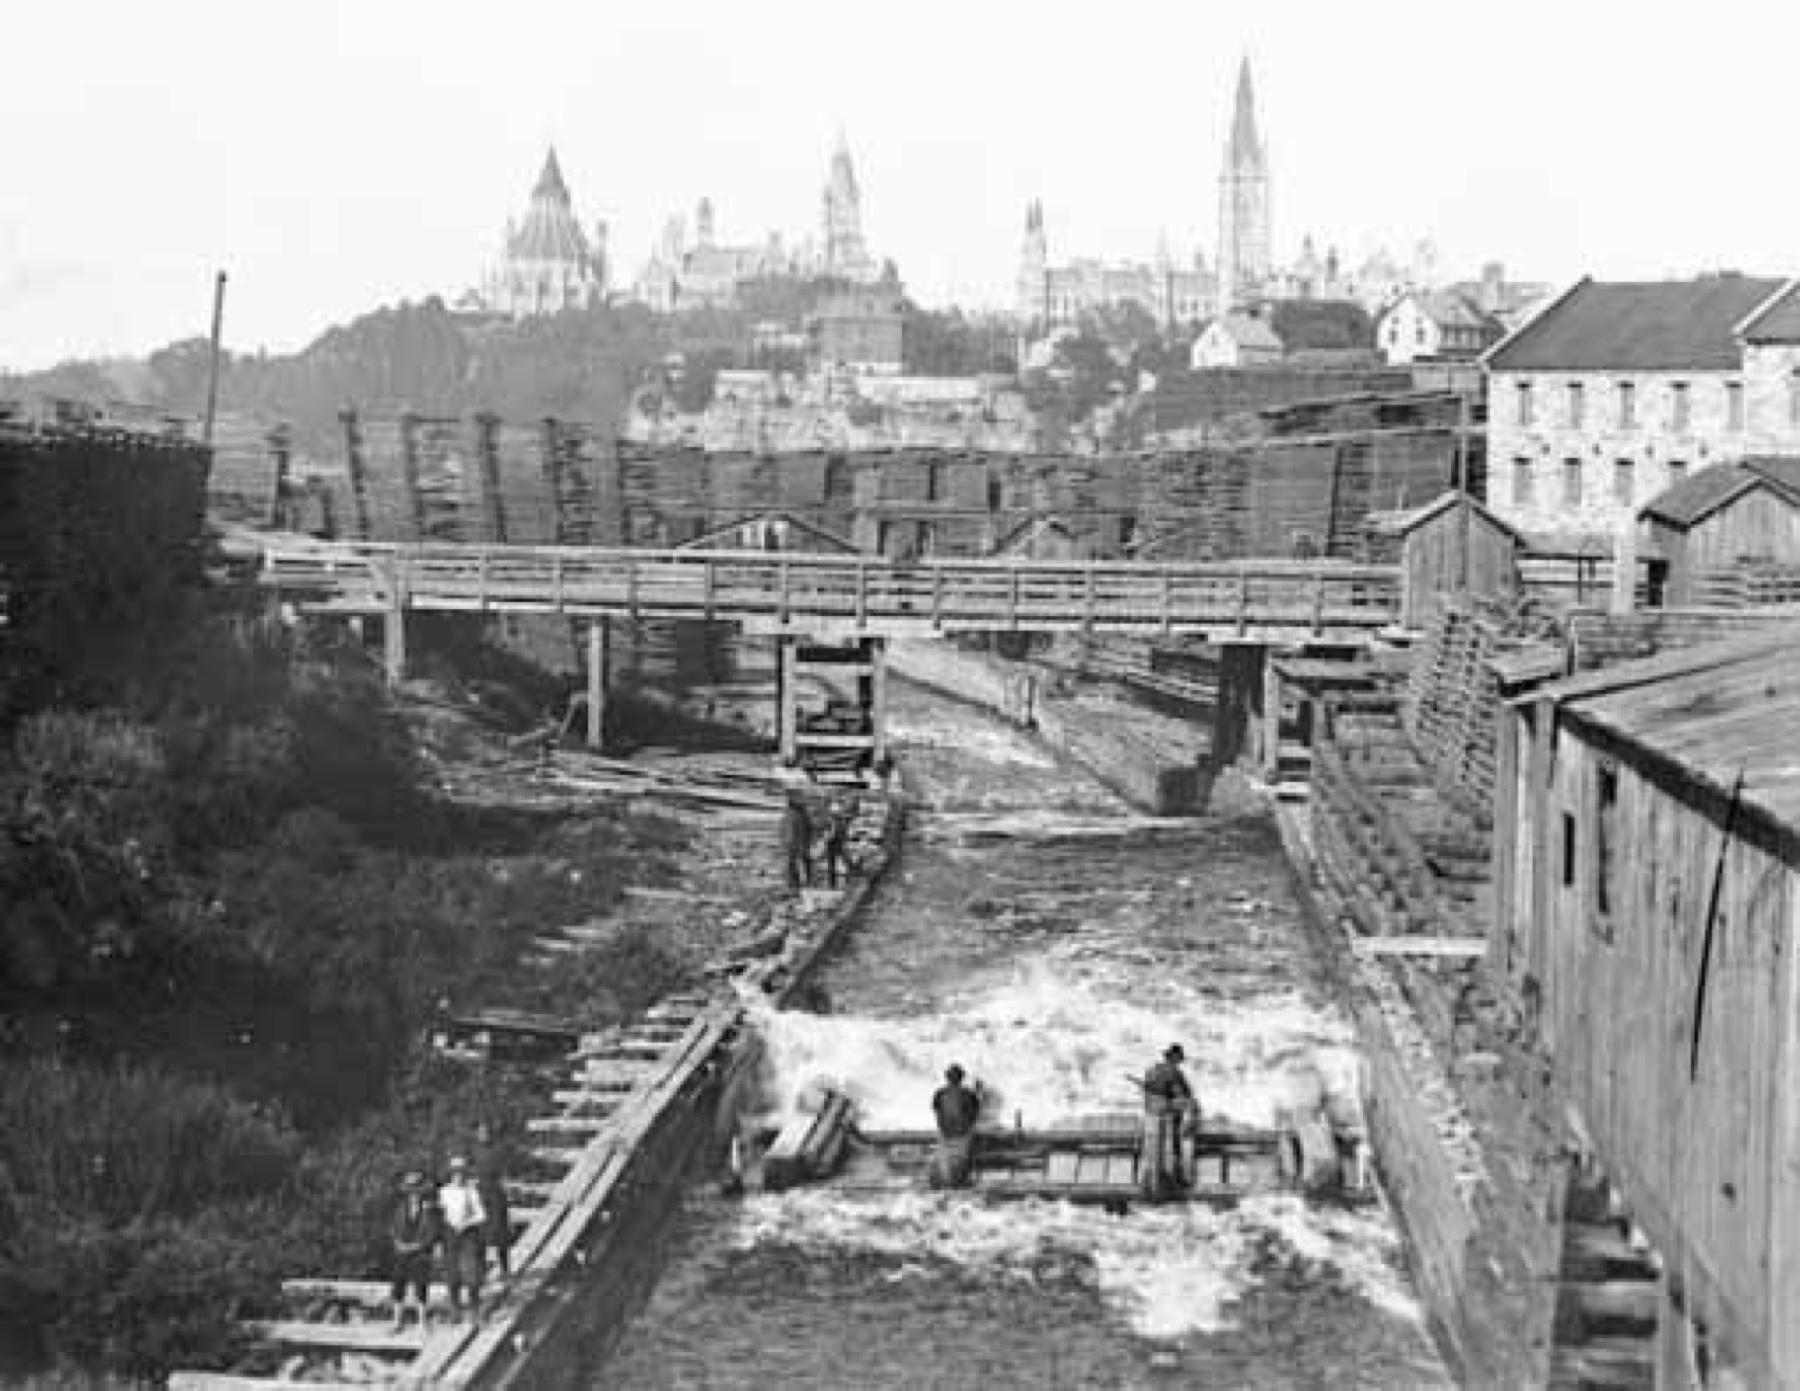 Photographie noir et blanc d’une scierie au-dessus d'un canal avec des bâtiments du Parlement d’Ottawa en arrière-plan; dans le canal, des hommes à l’œuvre sur un radeau de bûcheron.